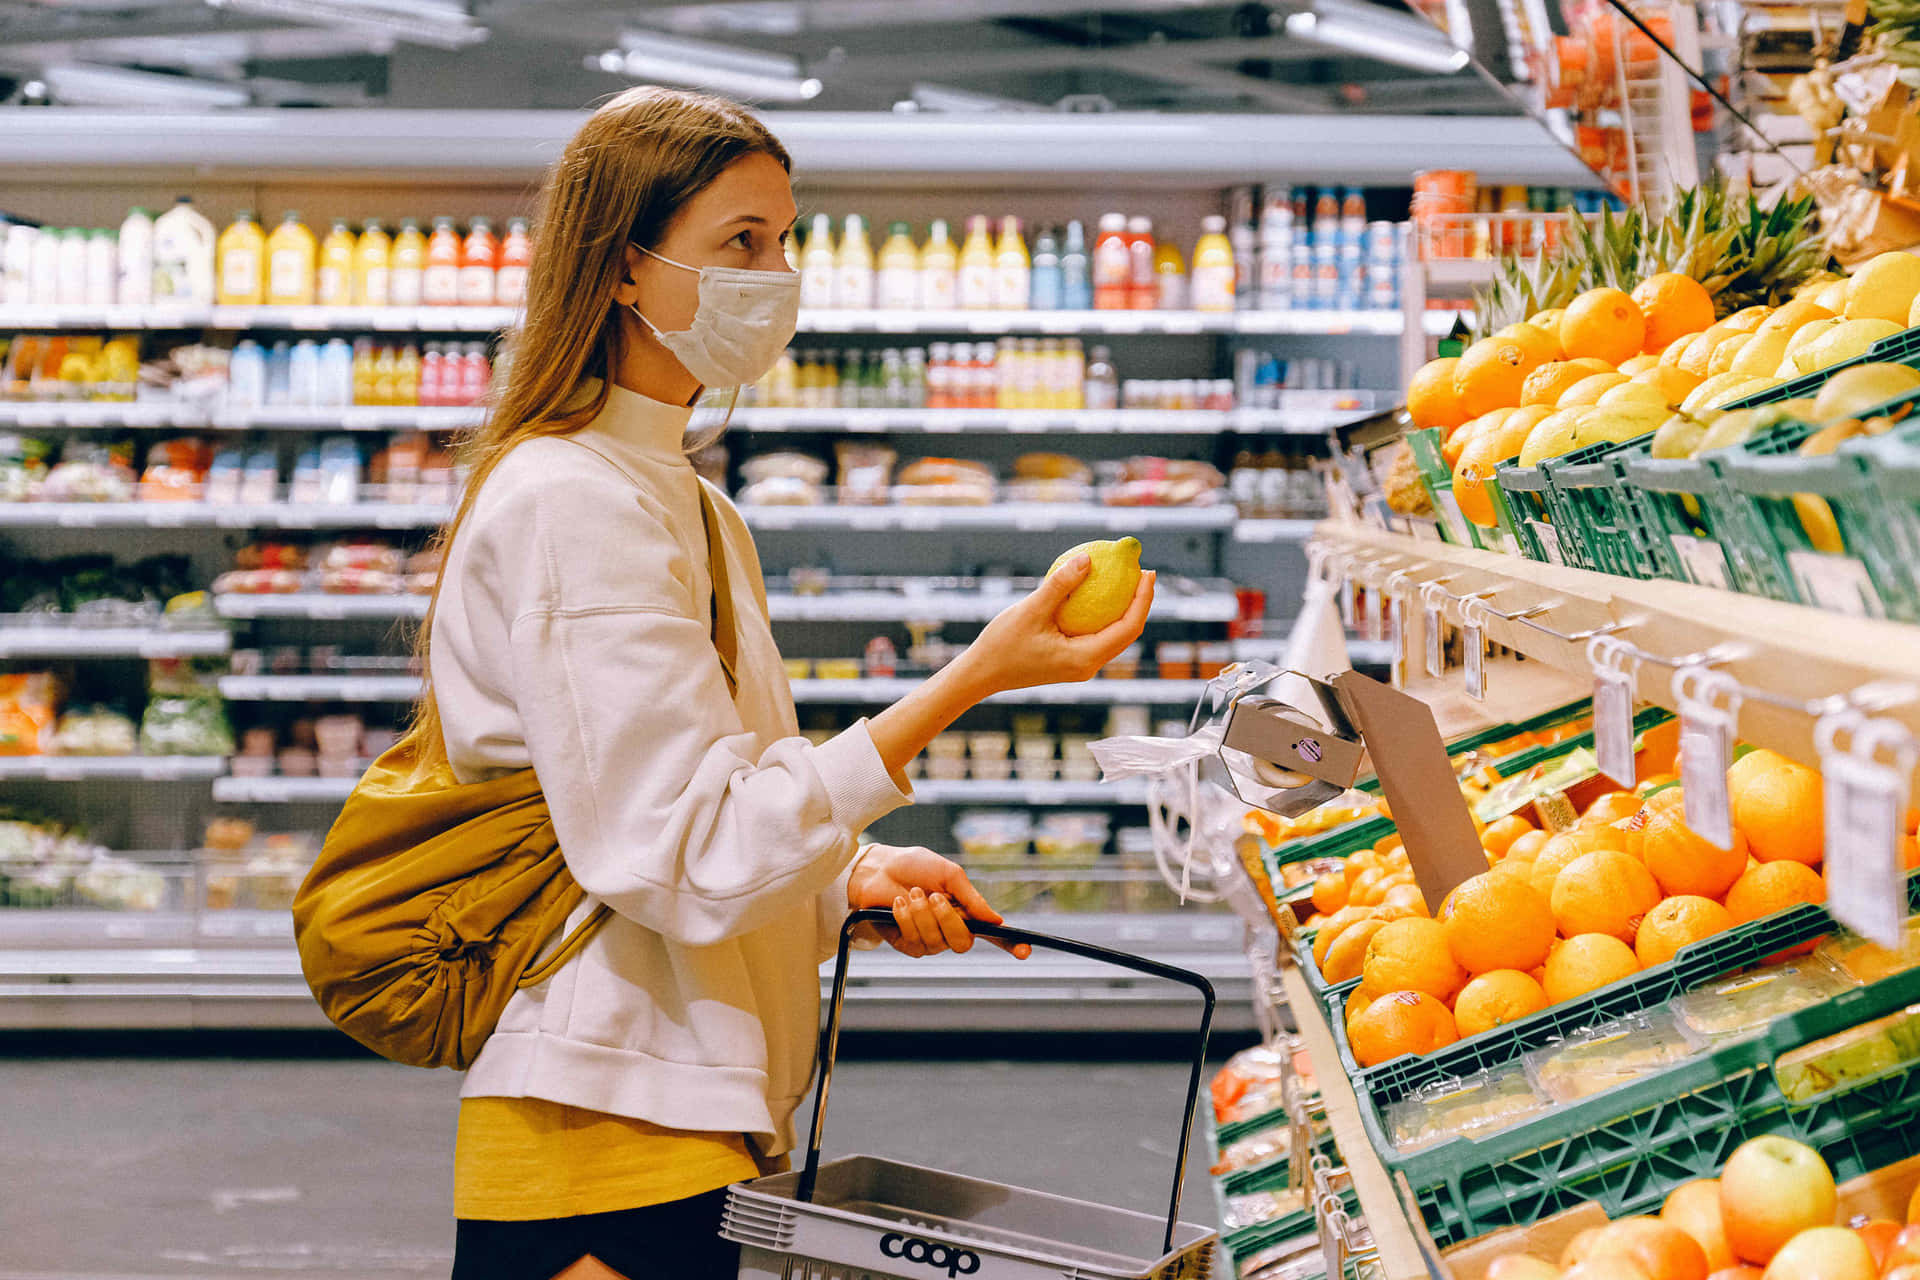 Mujerusando Una Mascarilla Mientras Hace Compras En Un Supermercado